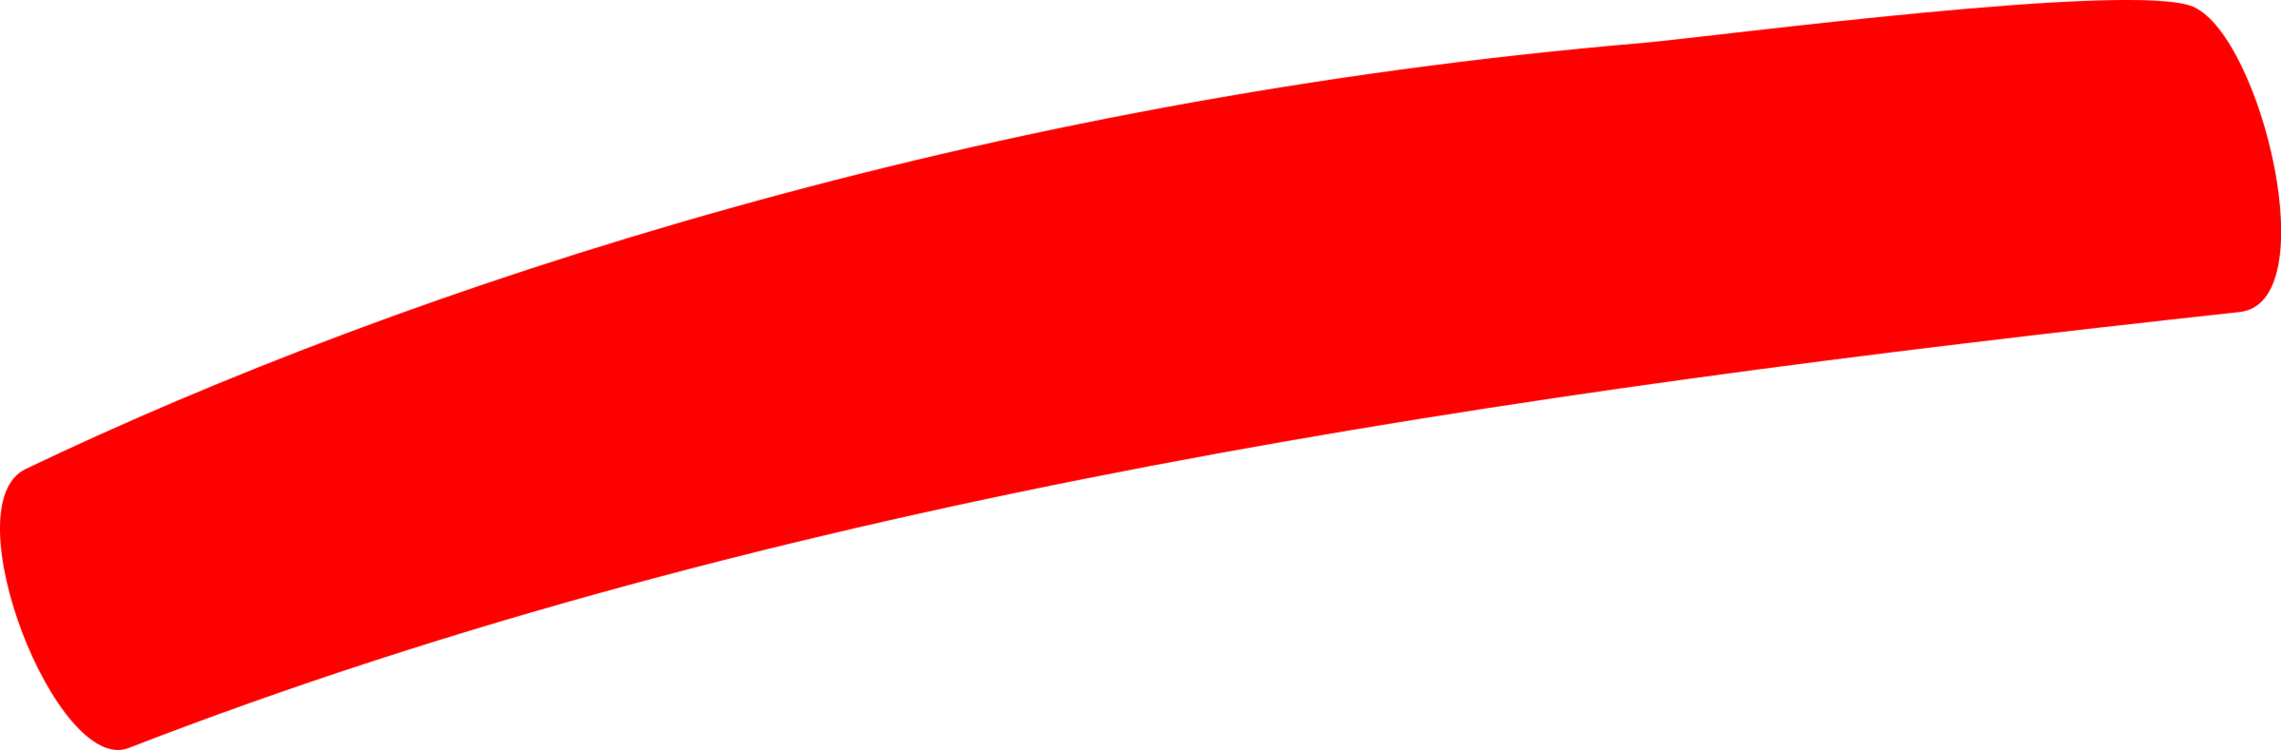 Line,Angle,Red